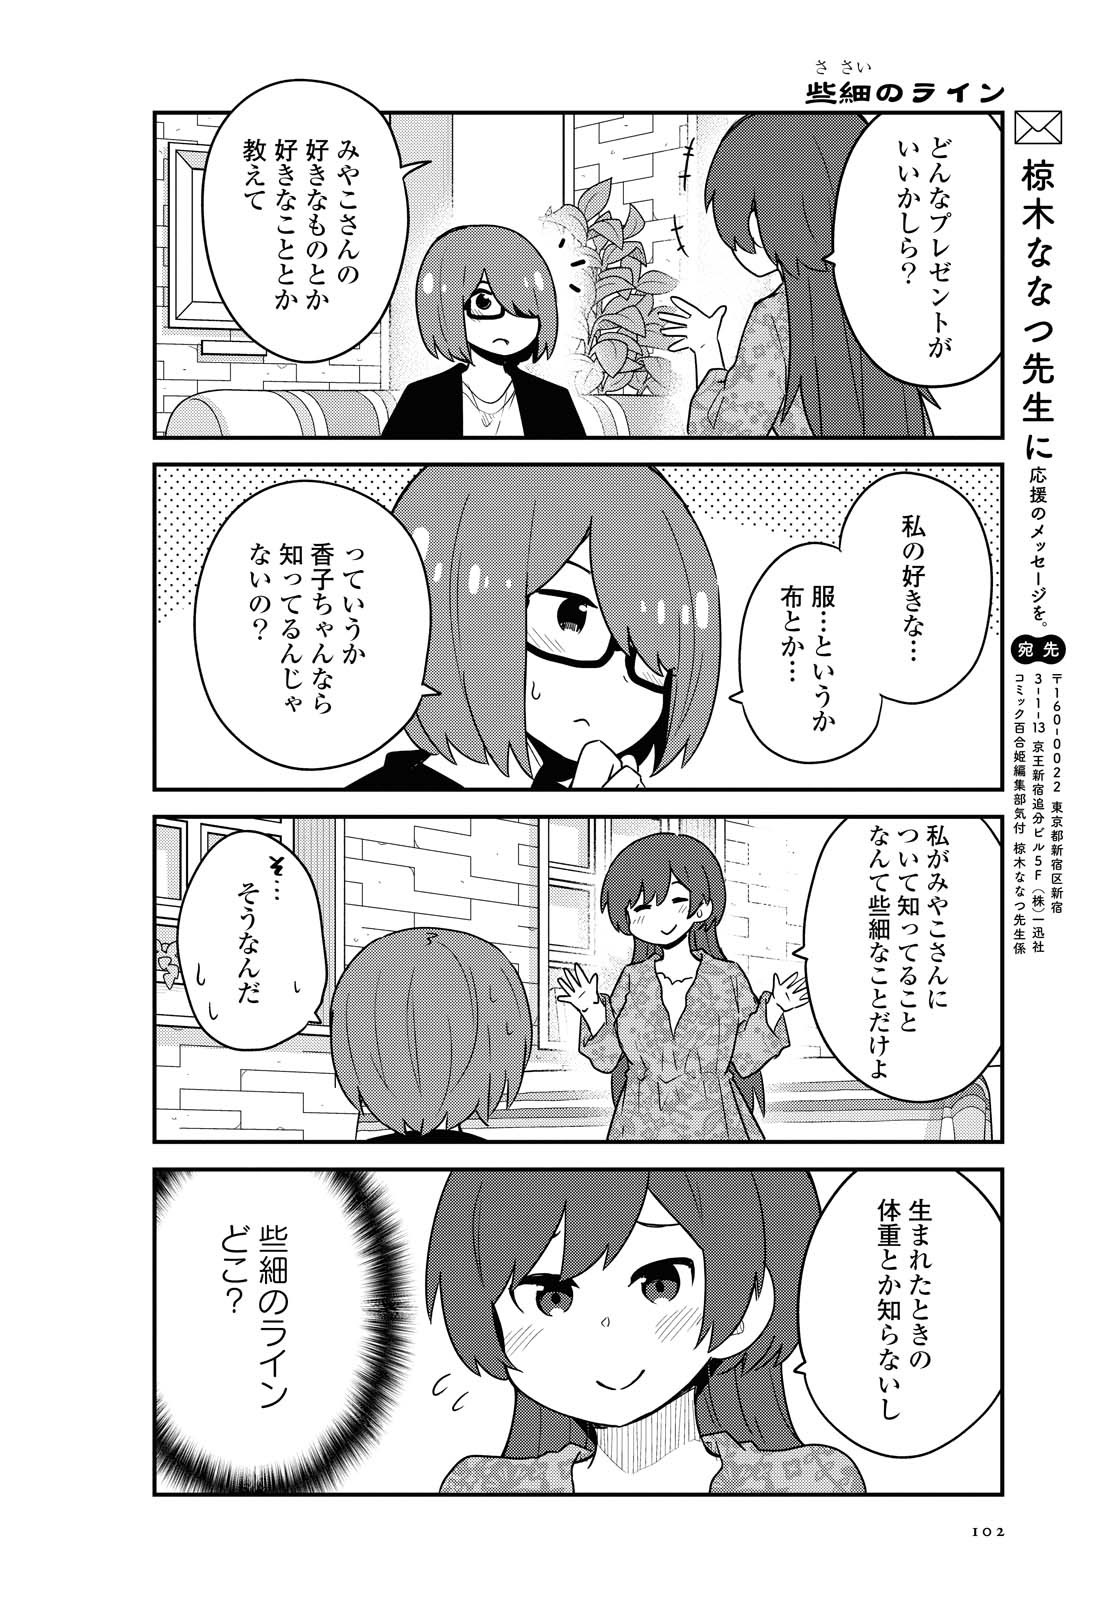 Watashi ni Tenshi ga Maiorita! - Chapter 82 - Page 14